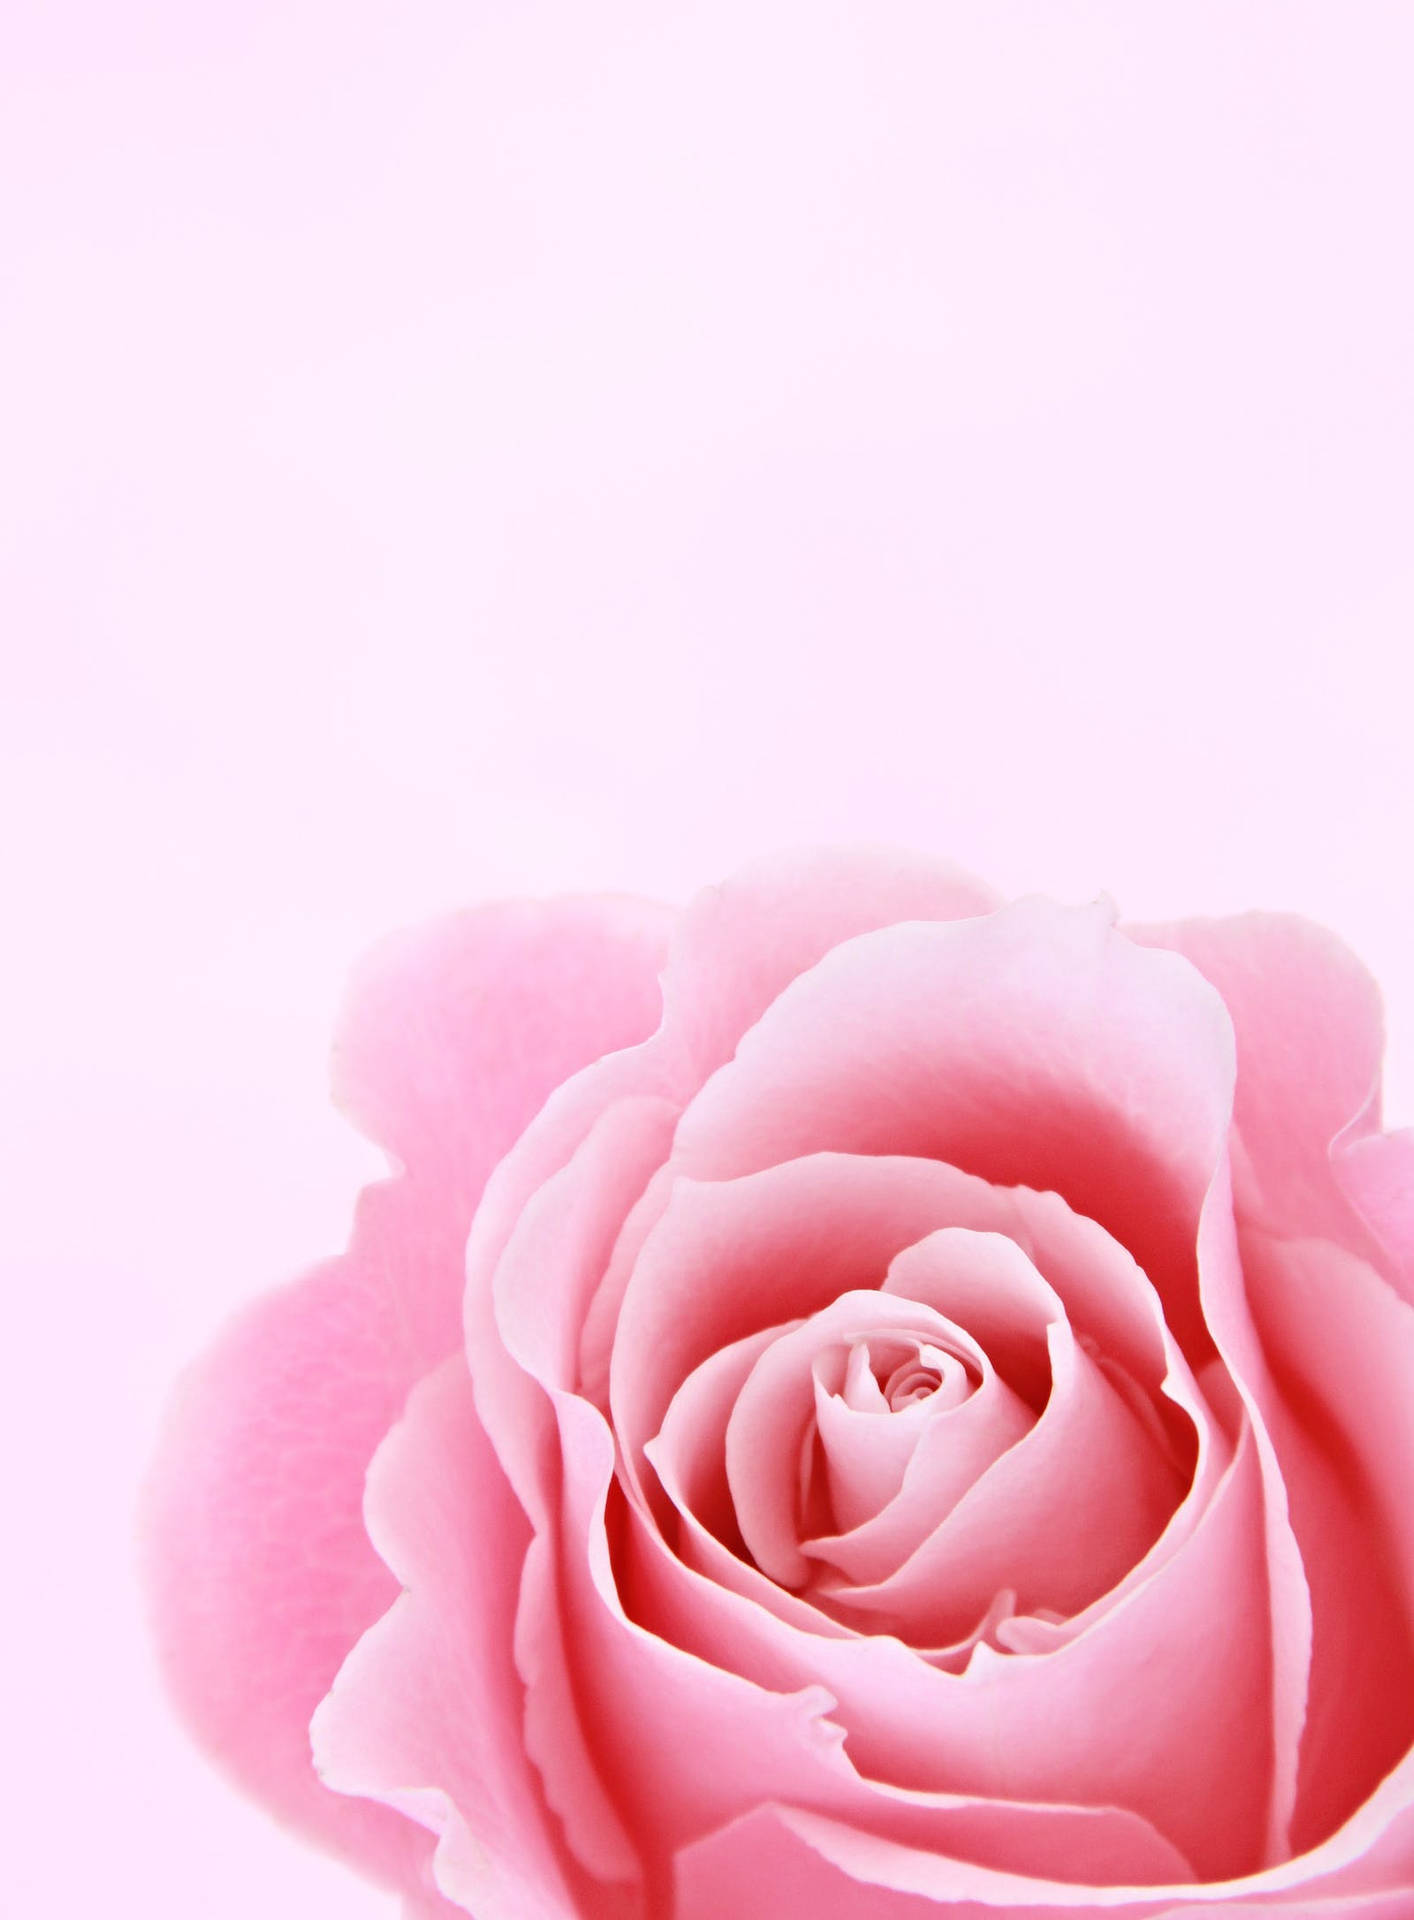 Rosaestética De La Rosa Para Iphone. Fondo de pantalla